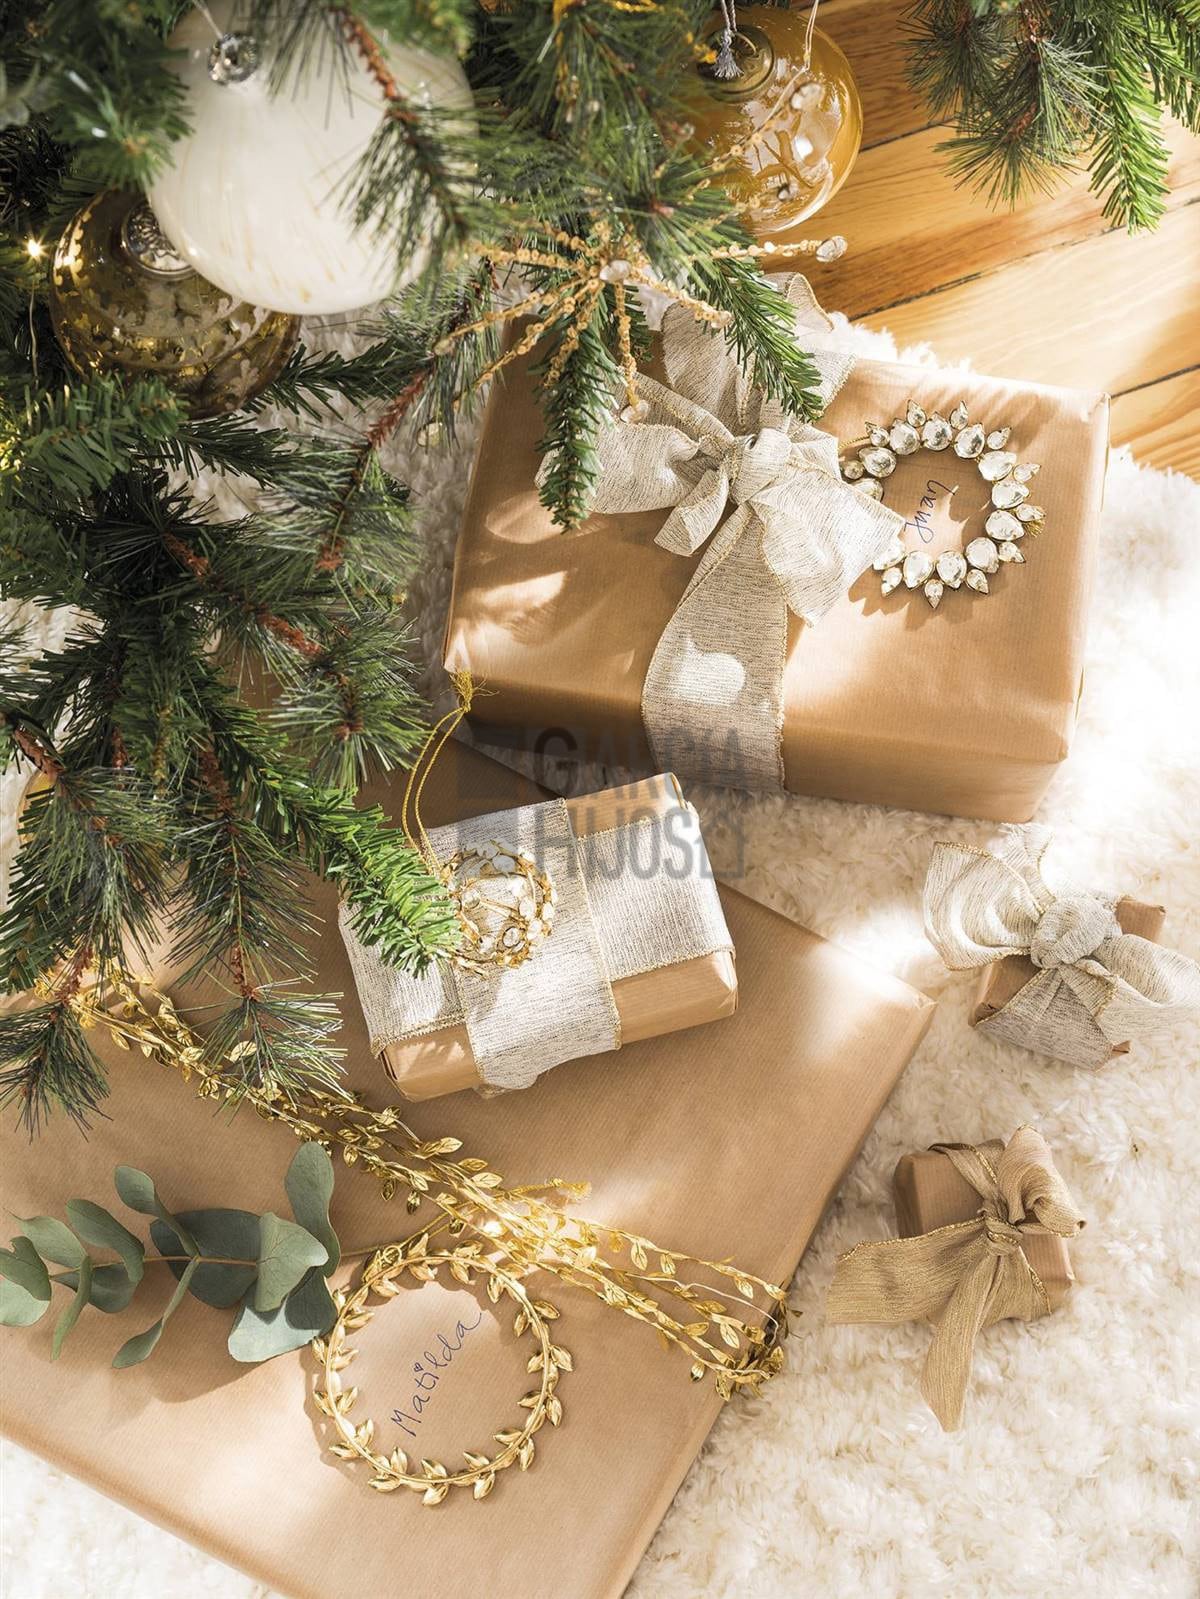 5 ideas brillantes que no pueden faltar en tu decoración de Navidad para estar a la última